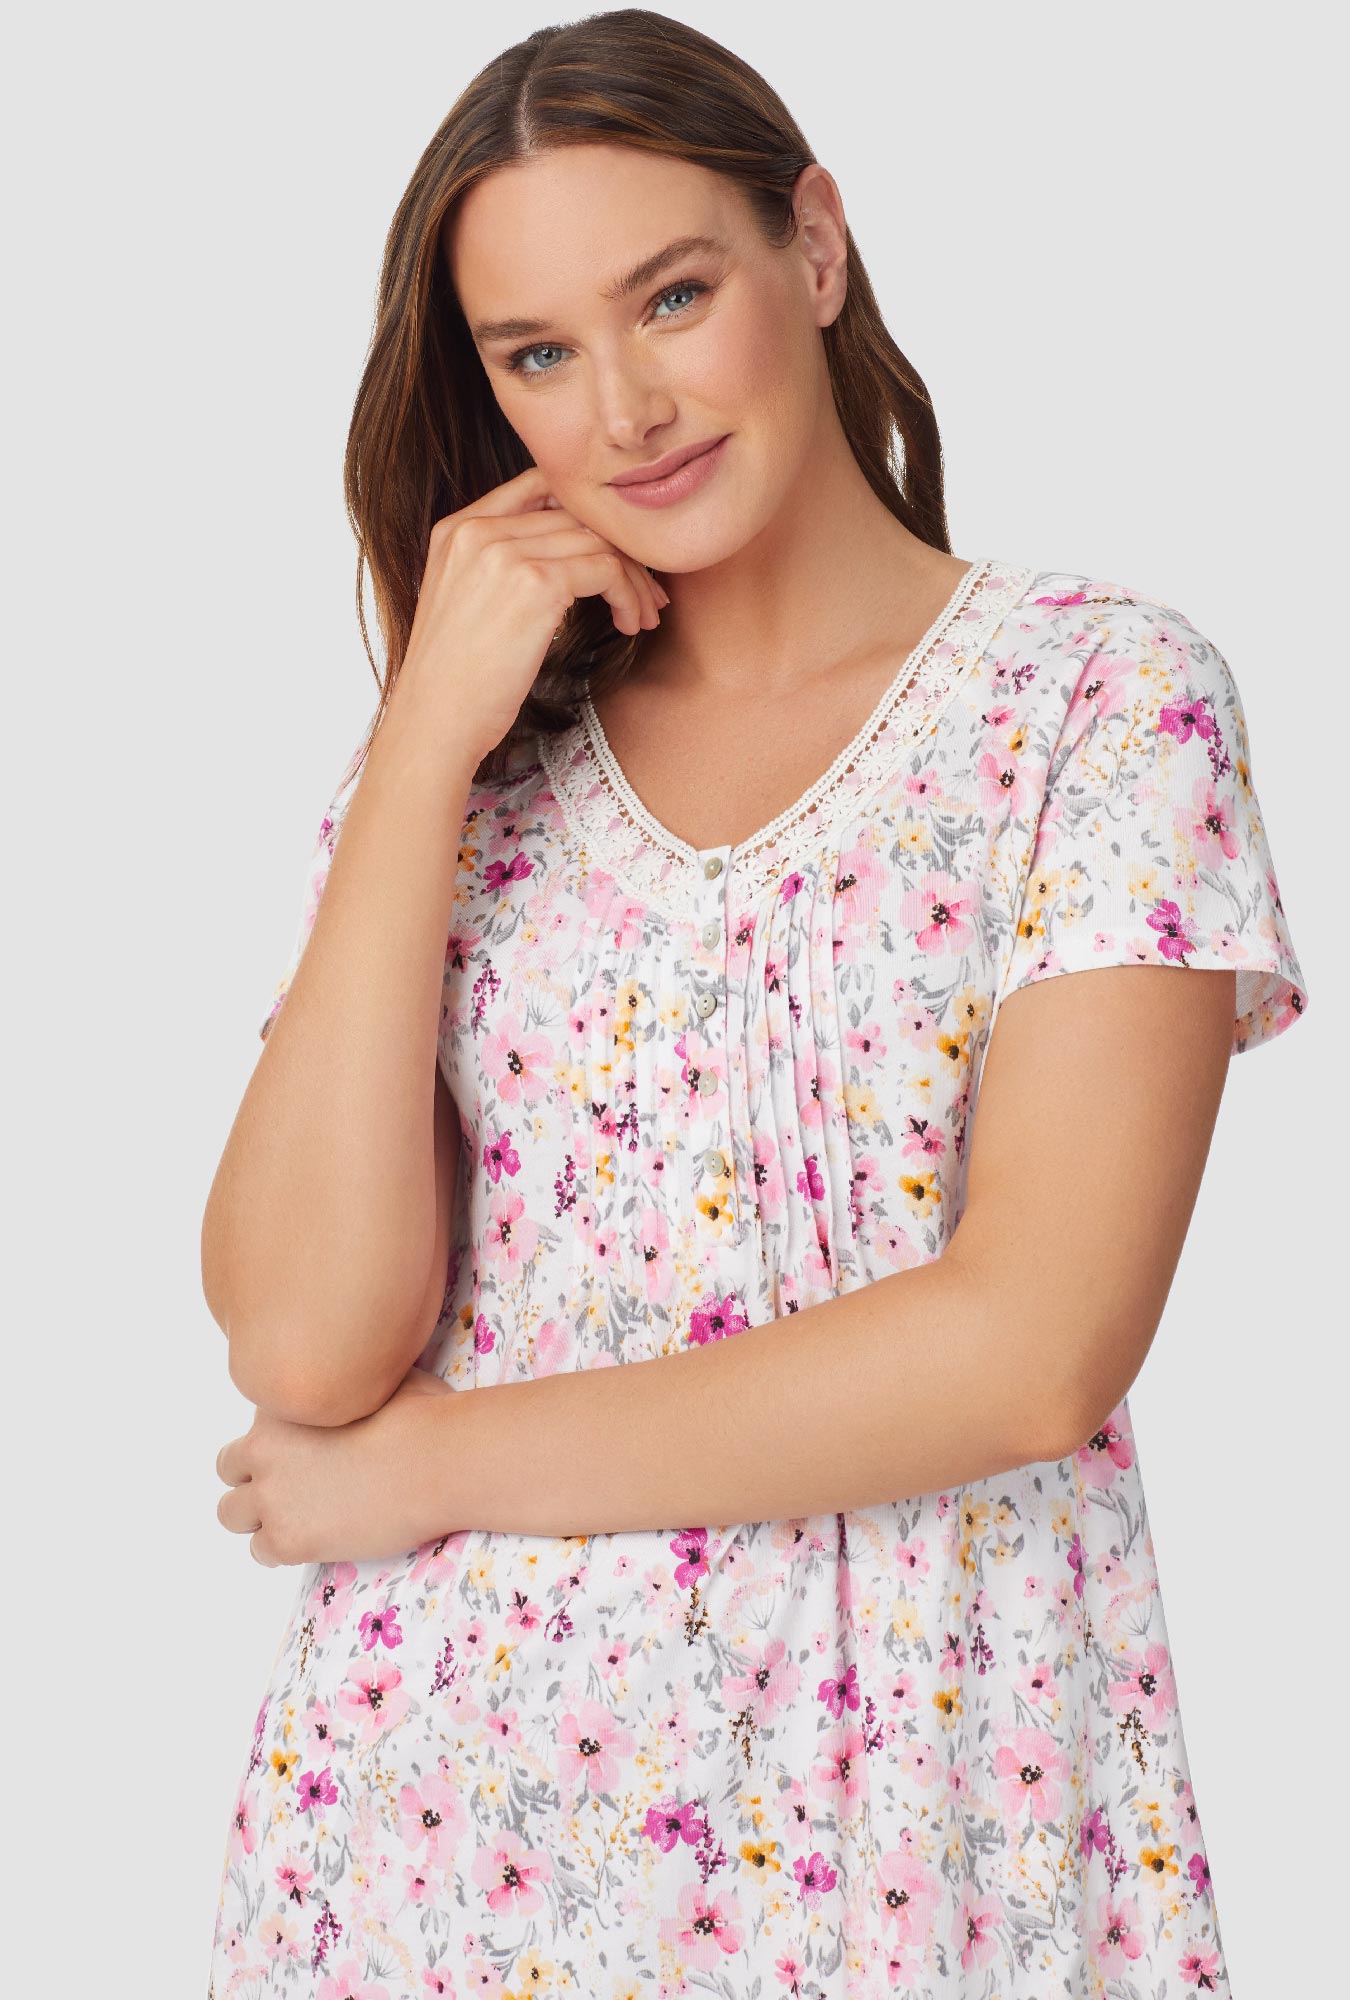 Aqua and Pink Floral Cap Sleeve Nightshirt - Aria Sleepwear